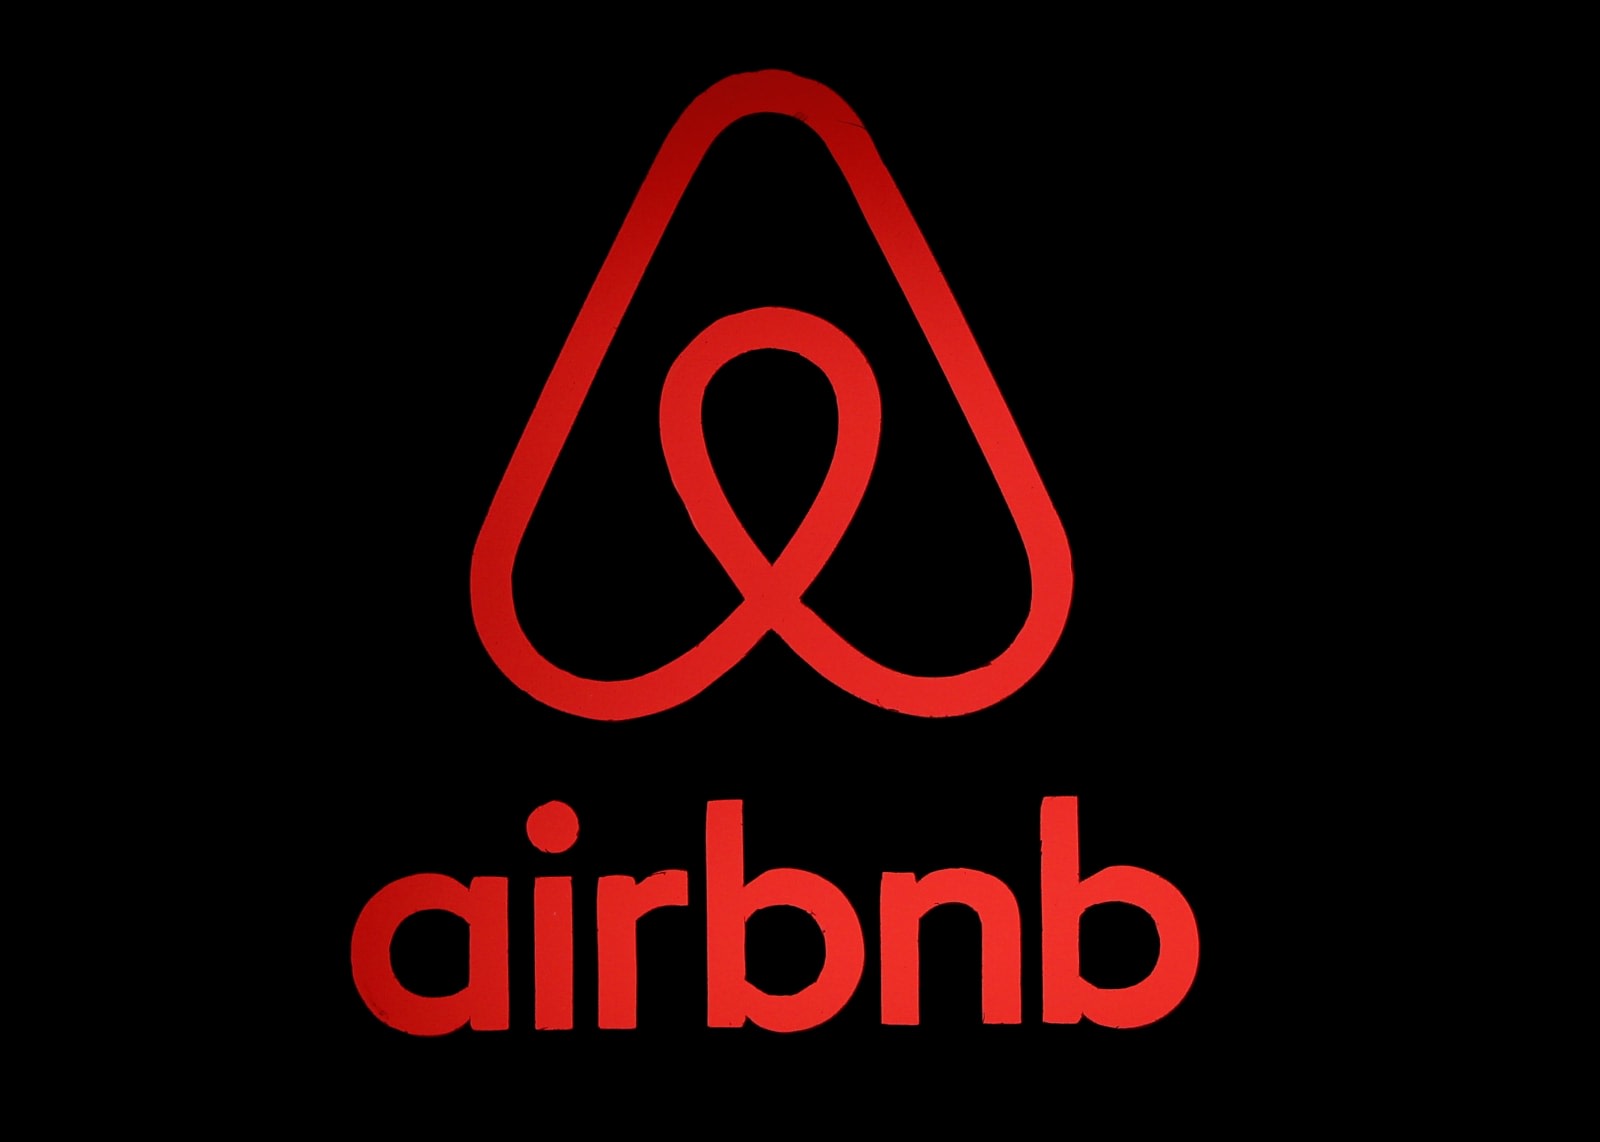 Î‘Ï€Î¿Ï„Î­Î»ÎµÏƒÎ¼Î± ÎµÎ¹ÎºÏŒÎ½Î±Ï‚ Î³Î¹Î± Airbnb test enables hosts to get paid faster